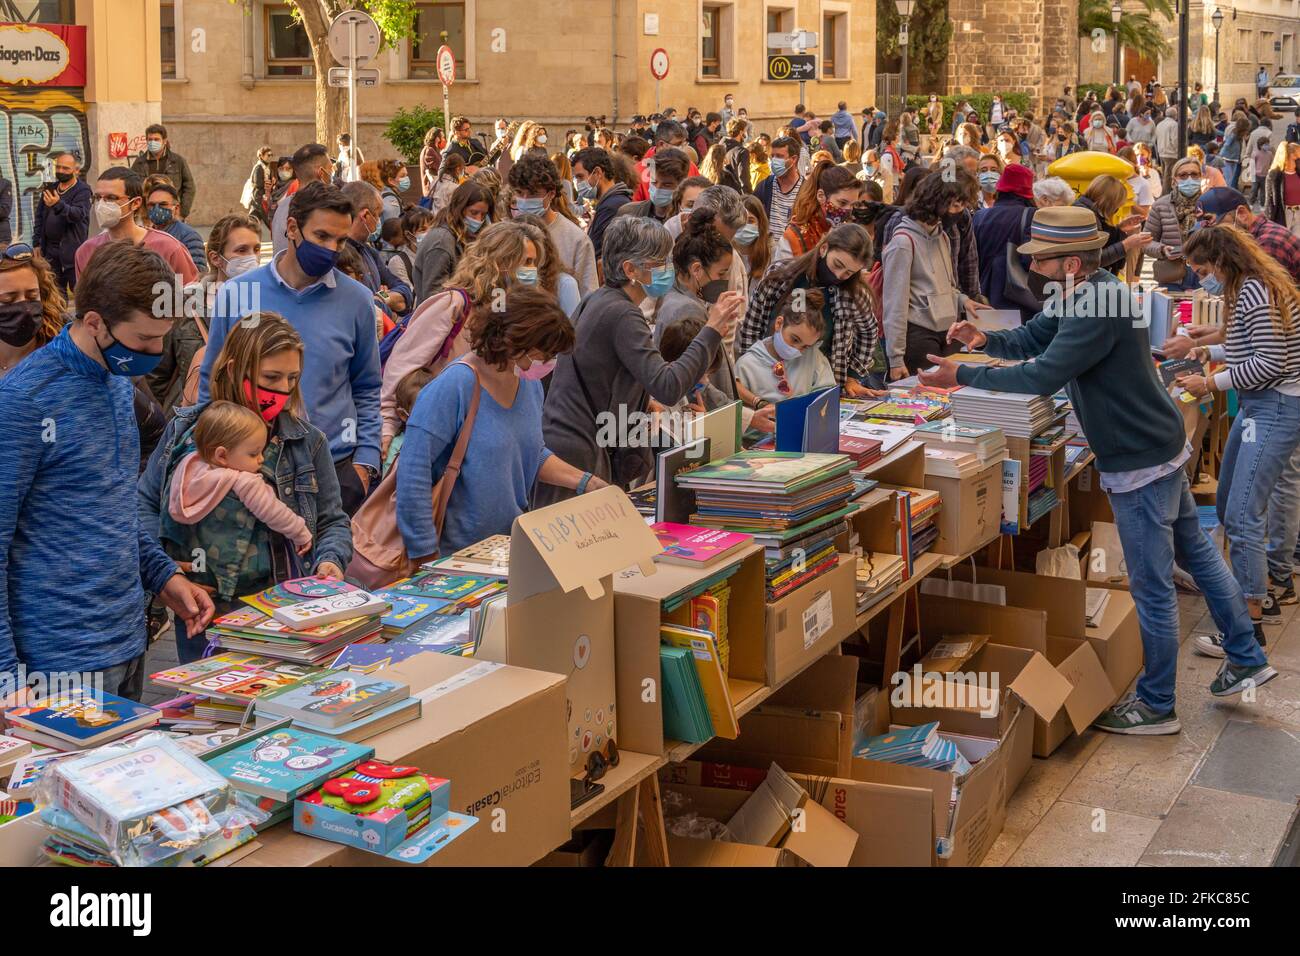 Palma de Mallorca; april 23 2021: Festivity of Sant Jordi or Book Day in the historic center of Palma de Mallorca in times of the Coronavirus pandemic Stock Photo